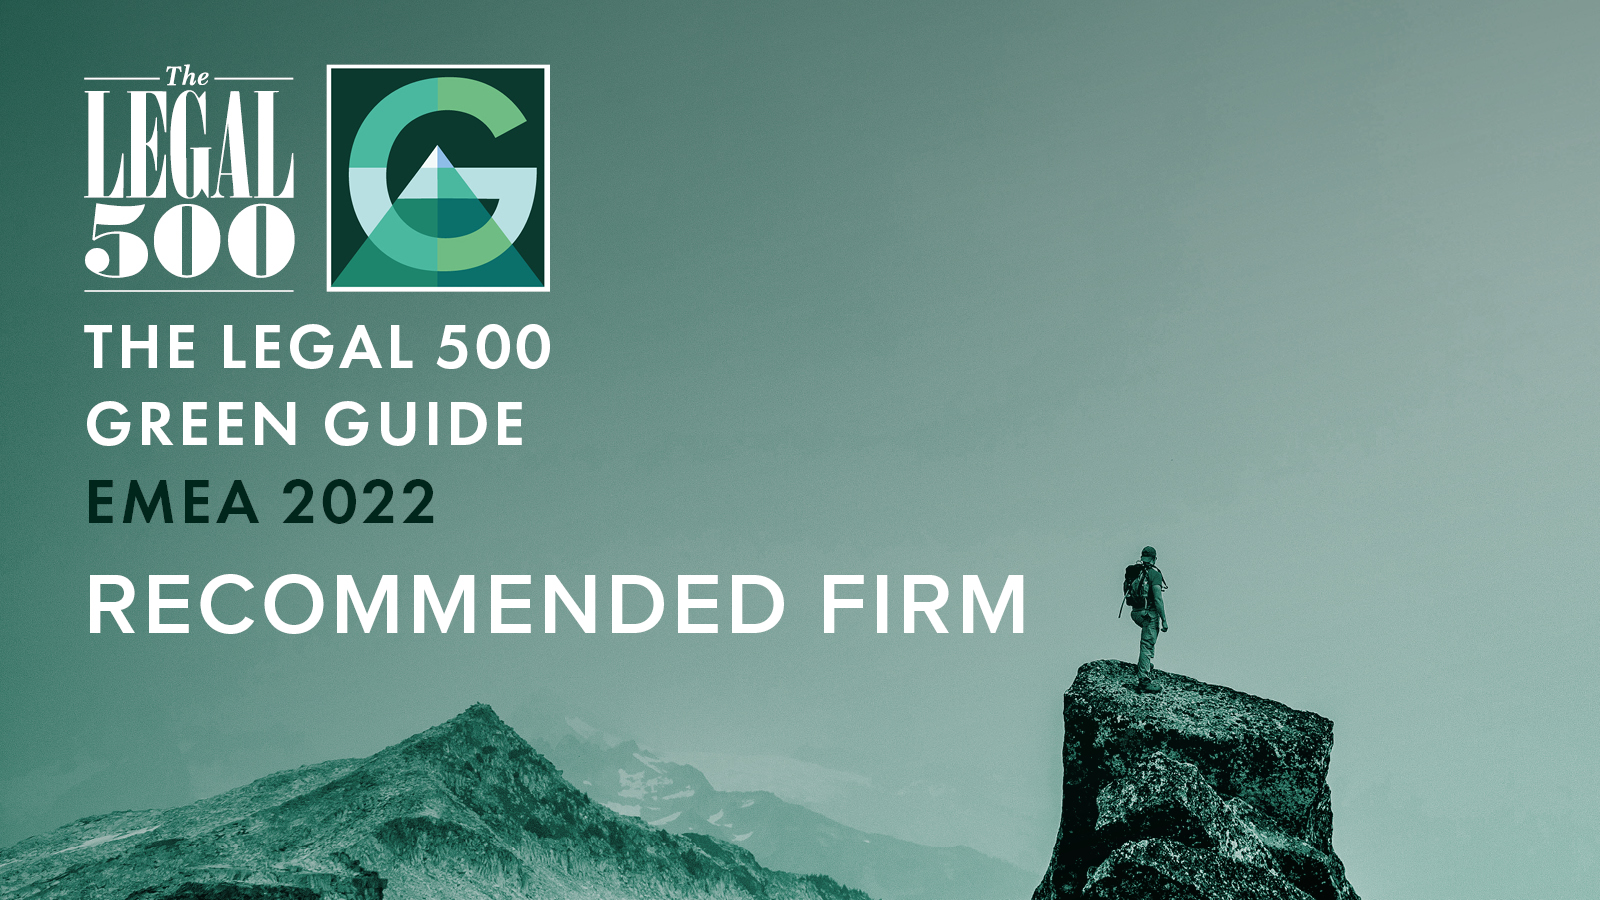 Garrigues, mentionné dans le guide « The Legal 500 Green Guide » pour sa contribution à la transition écologique